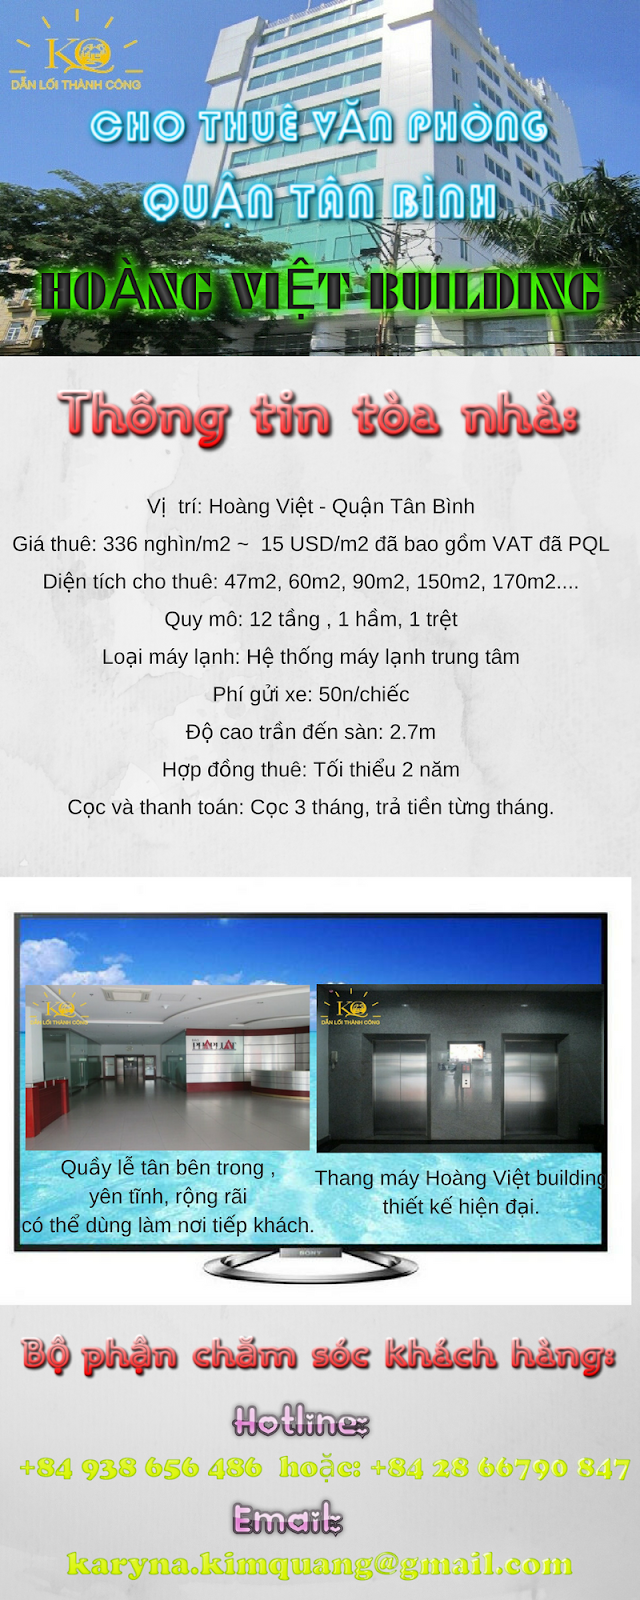 Cao ốc văn phòng Hoàng Việt Building Hoàng Việt